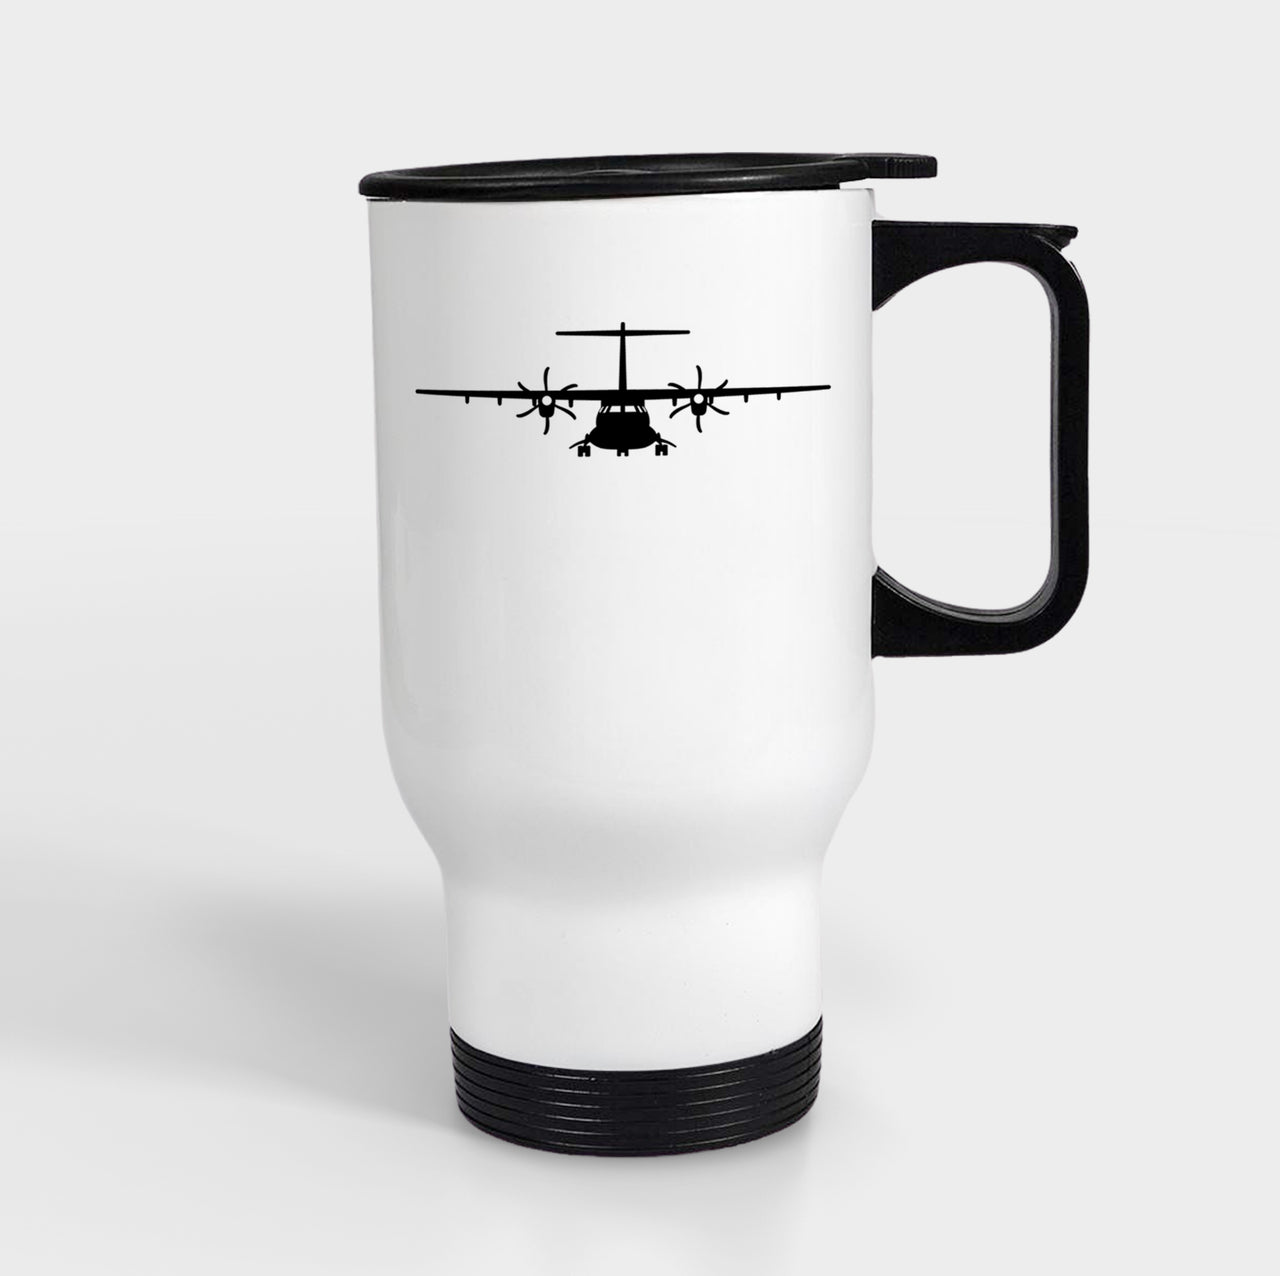 ATR-72 Silhouette Designed Travel Mugs (With Holder)